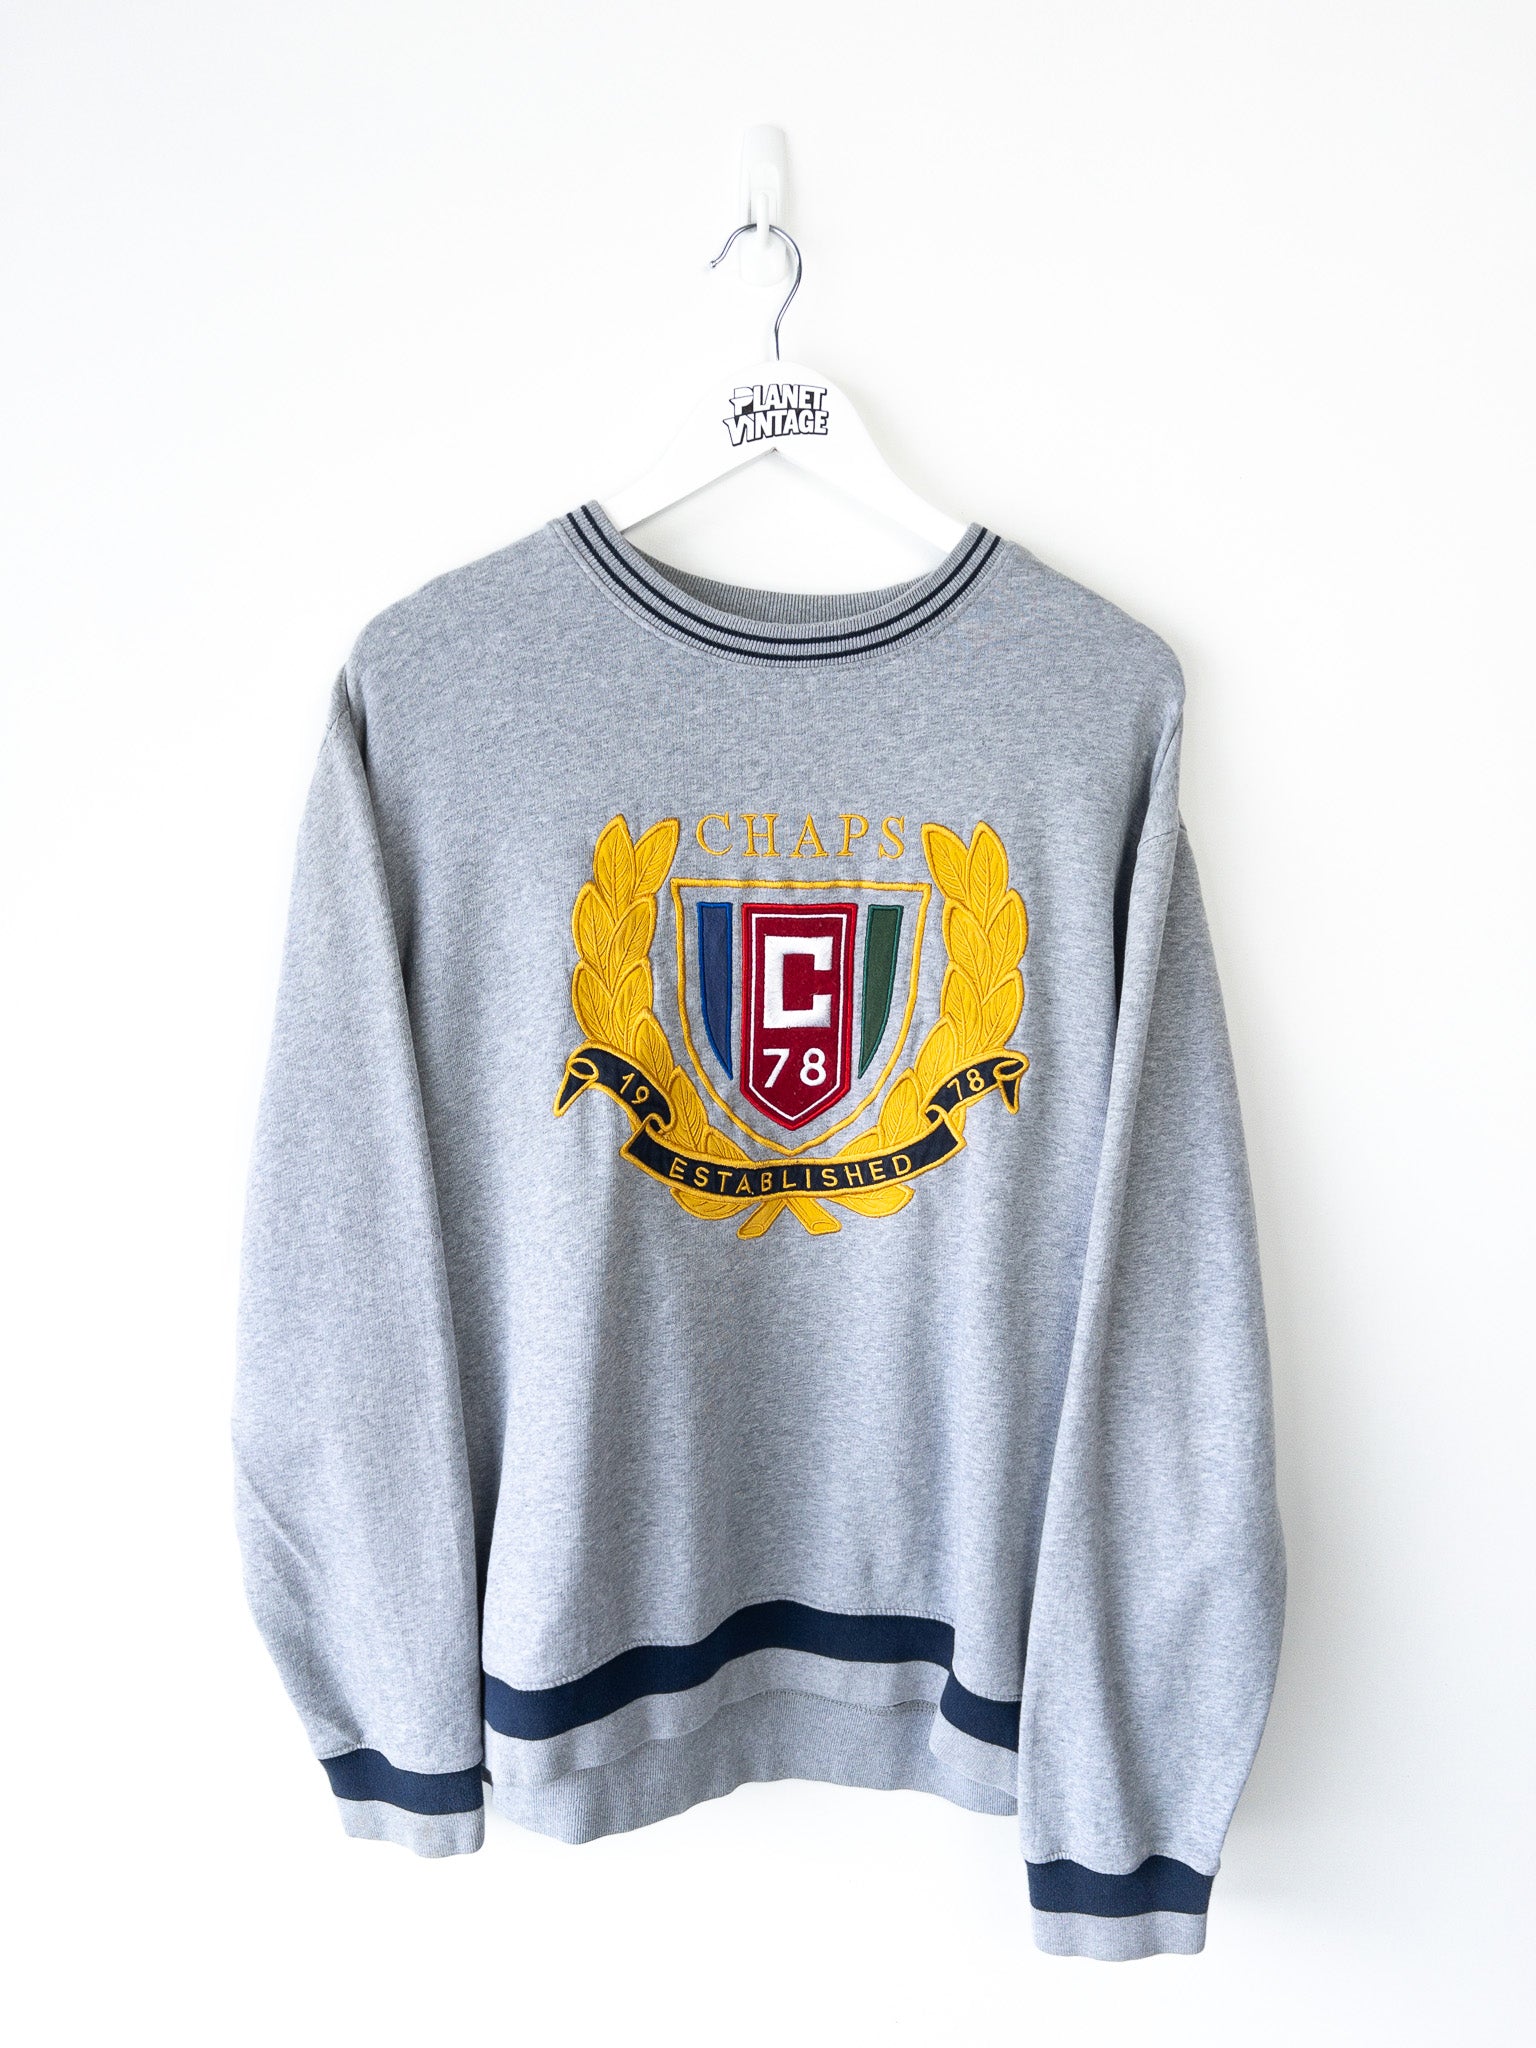 Vintage Chaps Ralph Lauren Sweatshirt (L)